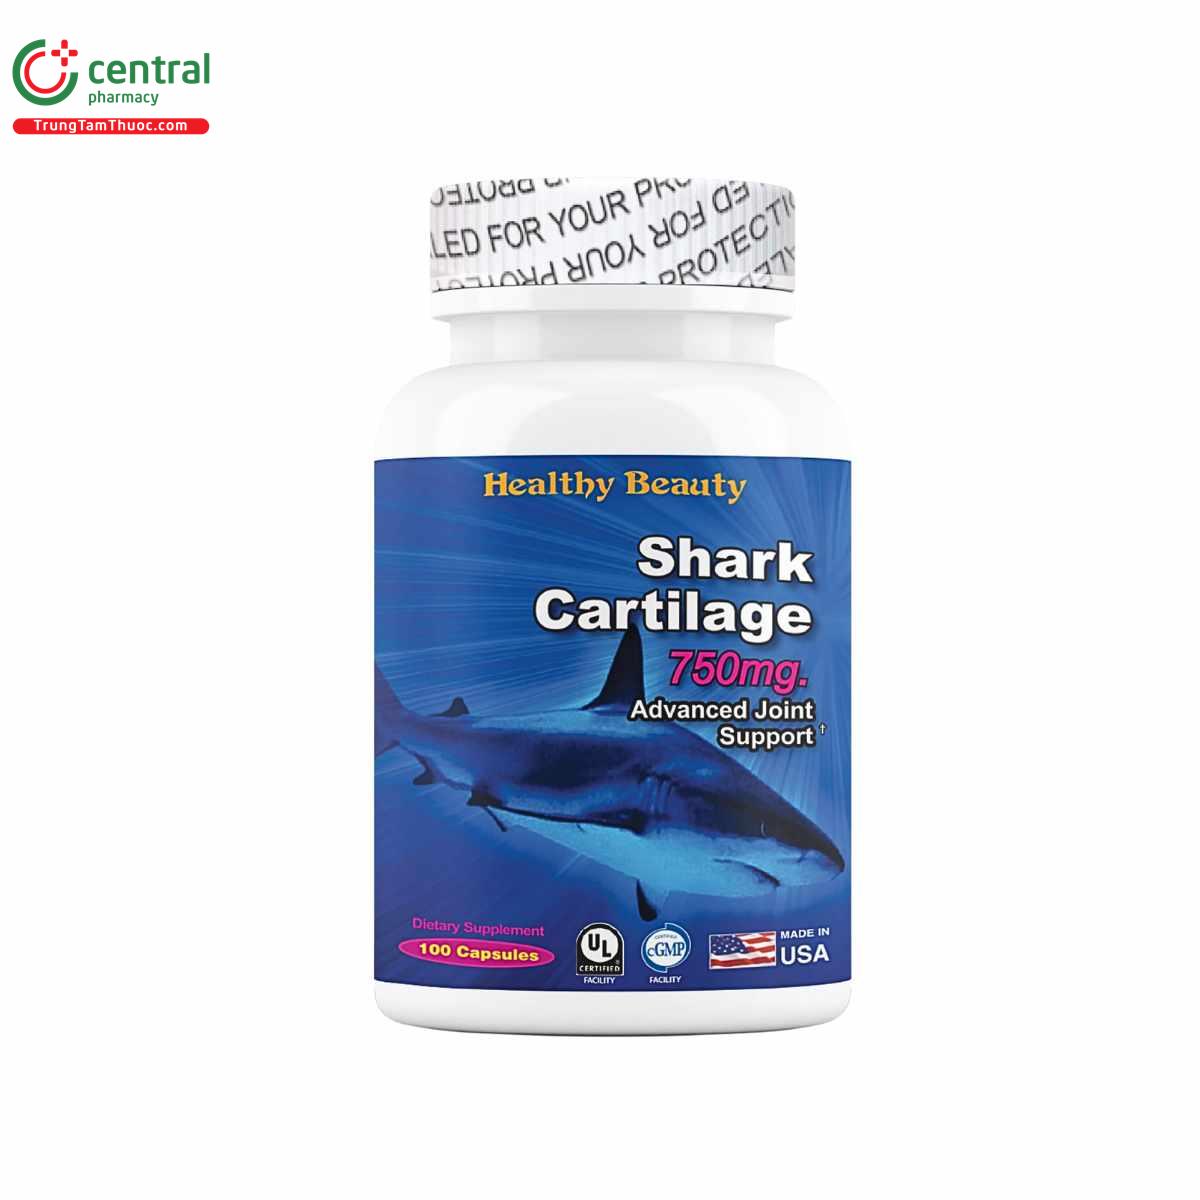 hb shark cartilage 750mg 5 V8527